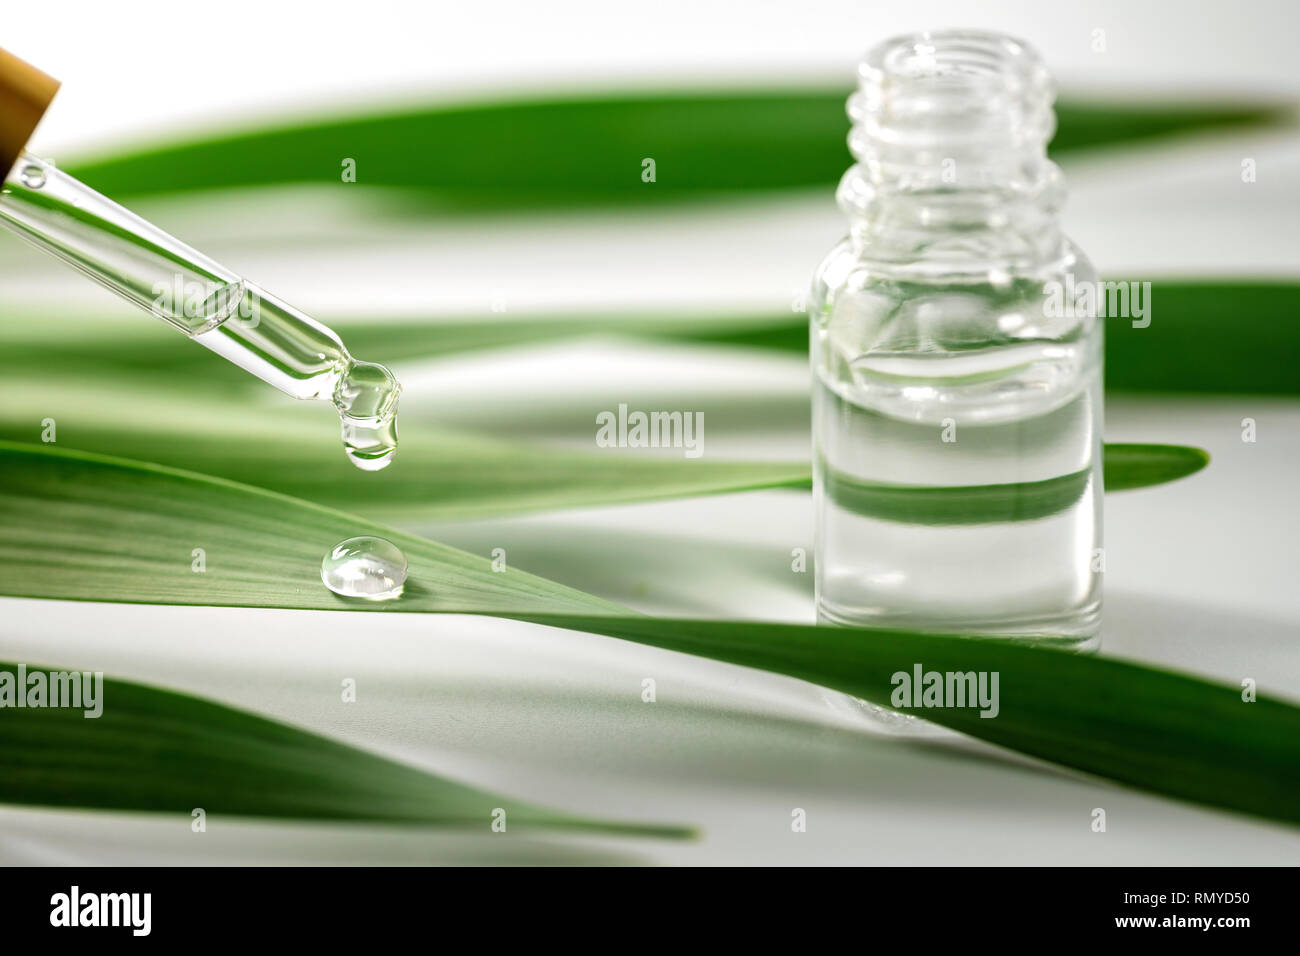 Olio essenziale goccia che cade sulla foglia verde da un contagocce Foto Stock